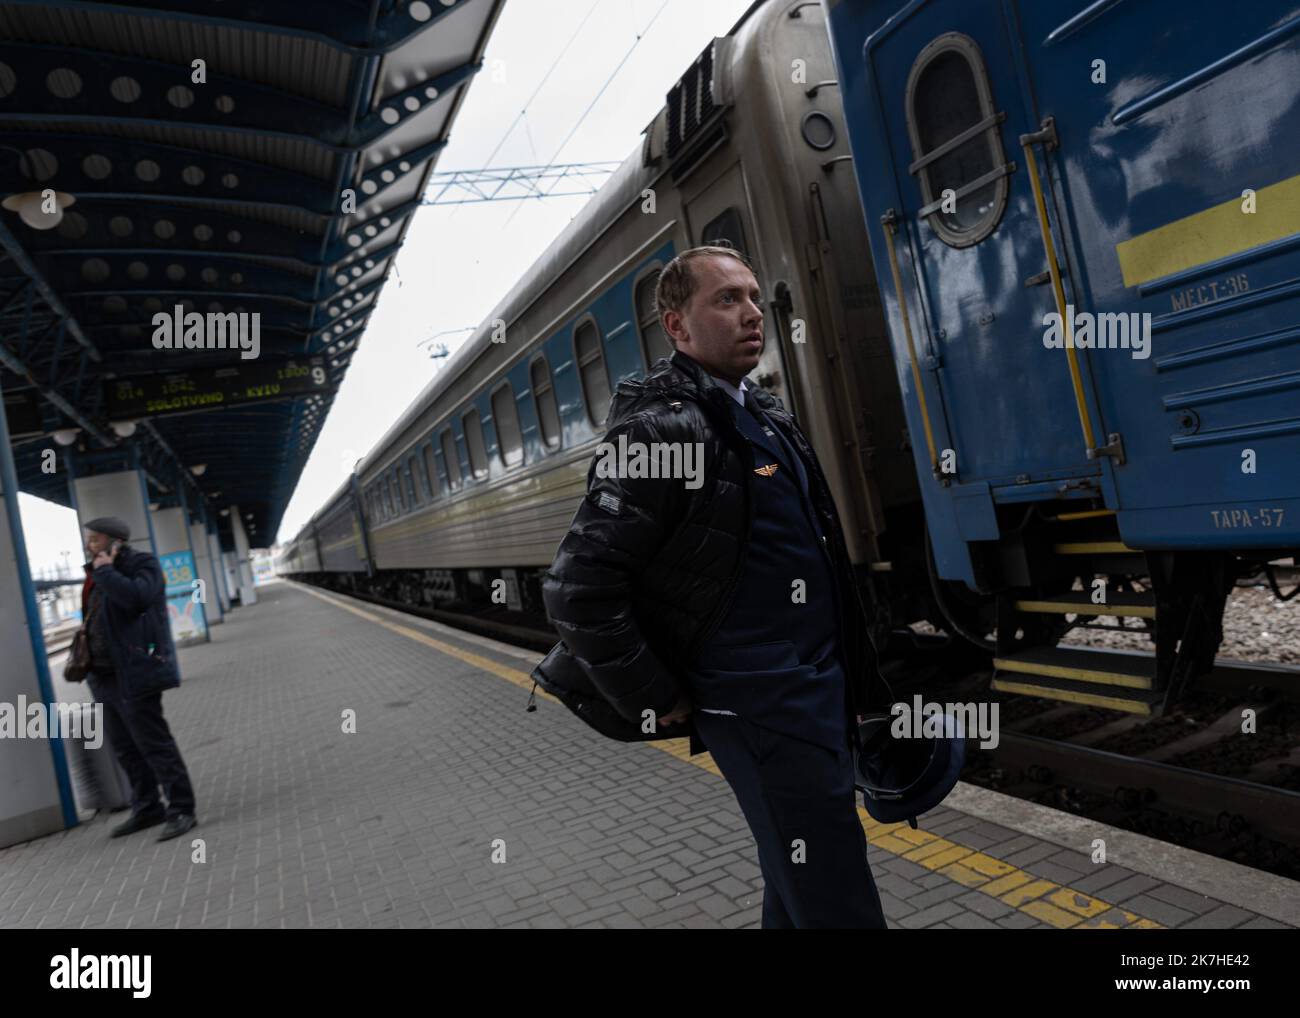 ©Sadak Souici / Le Pictorium/MAXPPP - Kiew 19/04/2022 Sadak Souici / Le Pictorium - 19/4/2022 - Ukraine / Kiew / Kiew - Oleksandr Pirozhkov, Chef de train depuis 15 ans. 'Depuis le 25 fevrier, je travaille sur les lignes d'evakuation Kiew-Lviv. Etre un Agent de train a toujours ete un reve d'enfant pour moi. Depuis la guerre, on se fait beaucoup de soucis, pour nous-memes et les passagers. Anhänger un Moment, auf mettait 100 personnes dans un wagon fait pour 36. Nous avons evakue des enfants seuls, sans leurs parents, de Bucha et Irpin. ILS nous demandaient sans arret ou etaient leurs parents. O Stockfoto